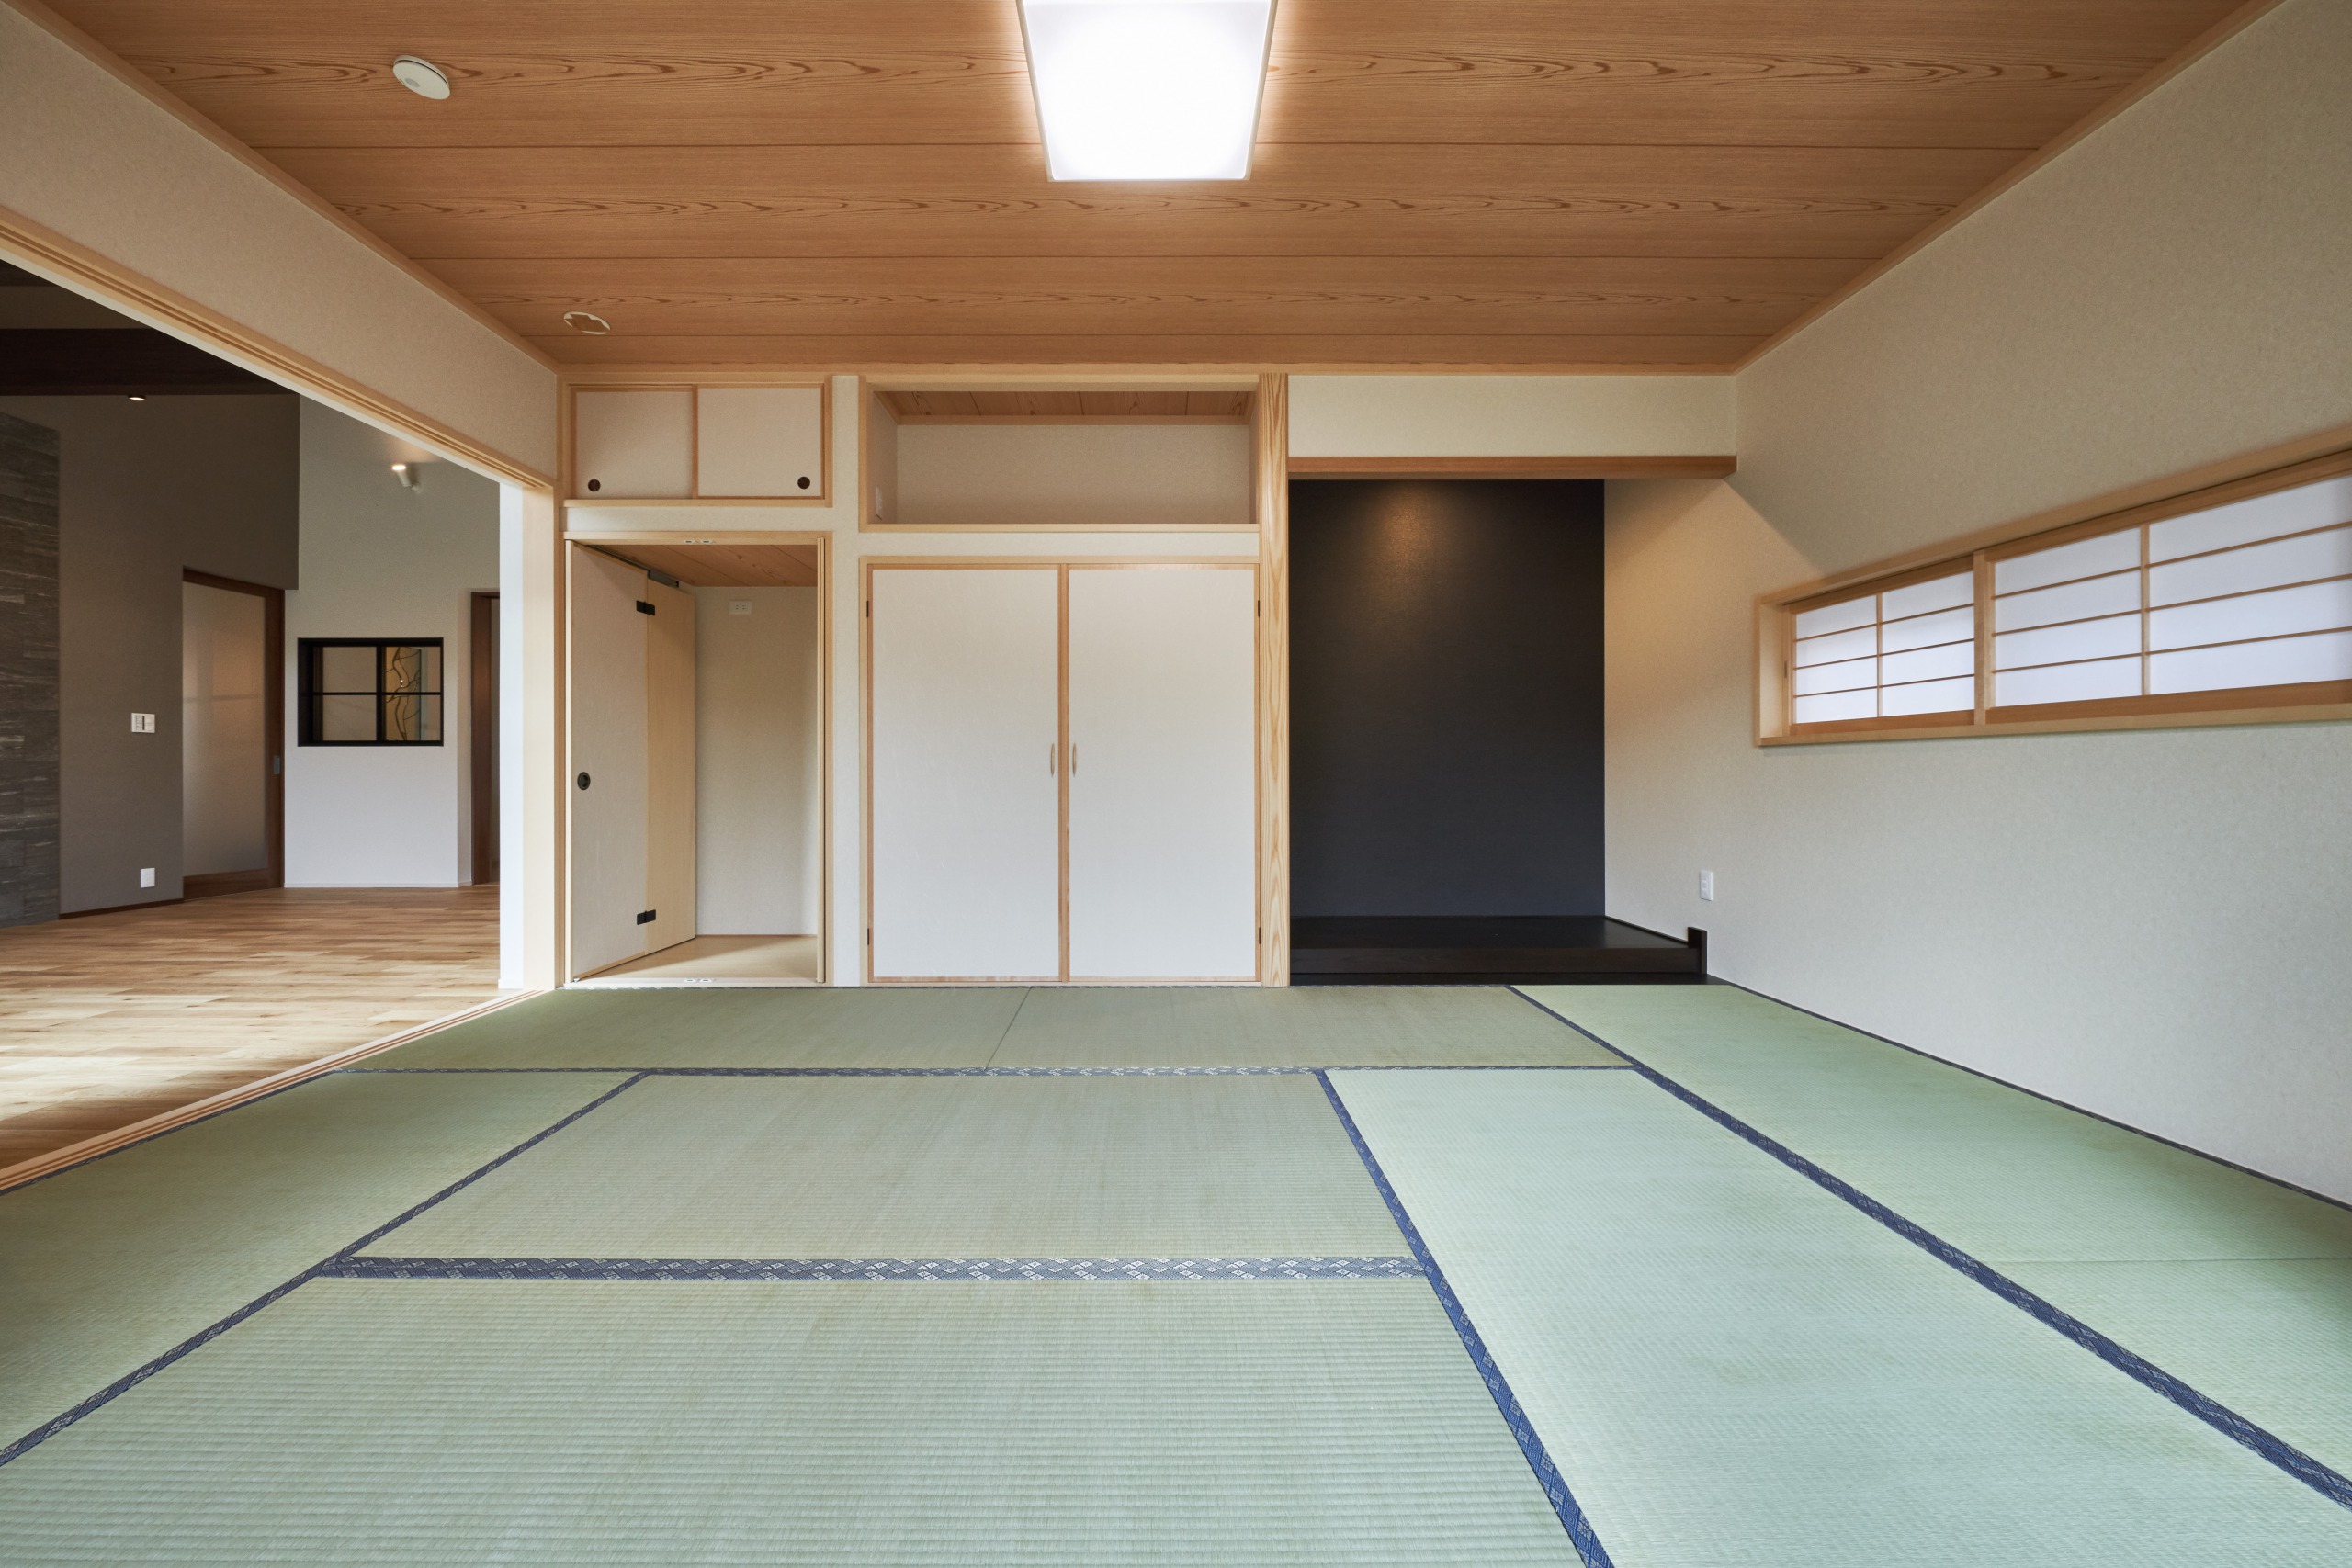 襖を開ければ、和室とダイニングが一つとなった和モダンな雰囲気溢れる空間に早変わり。